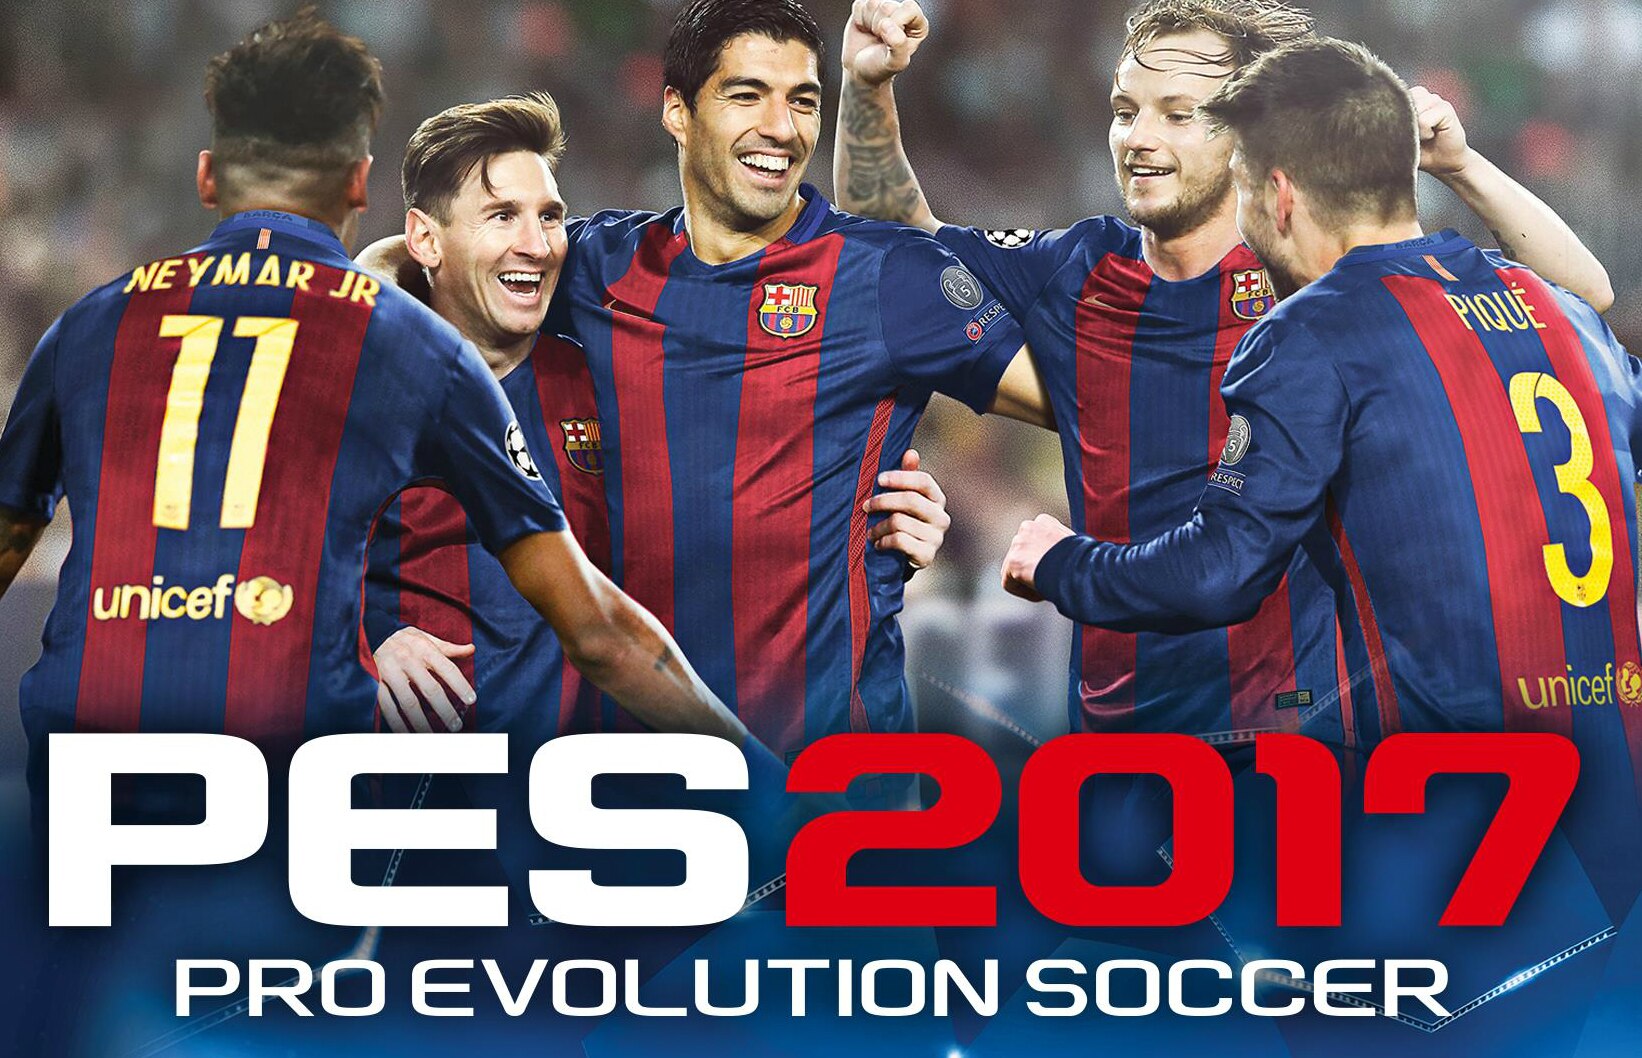 Baixe gratuitamente o jogo de demonstração PES 2017. Baixe Pro Evolution  Soccer 2017